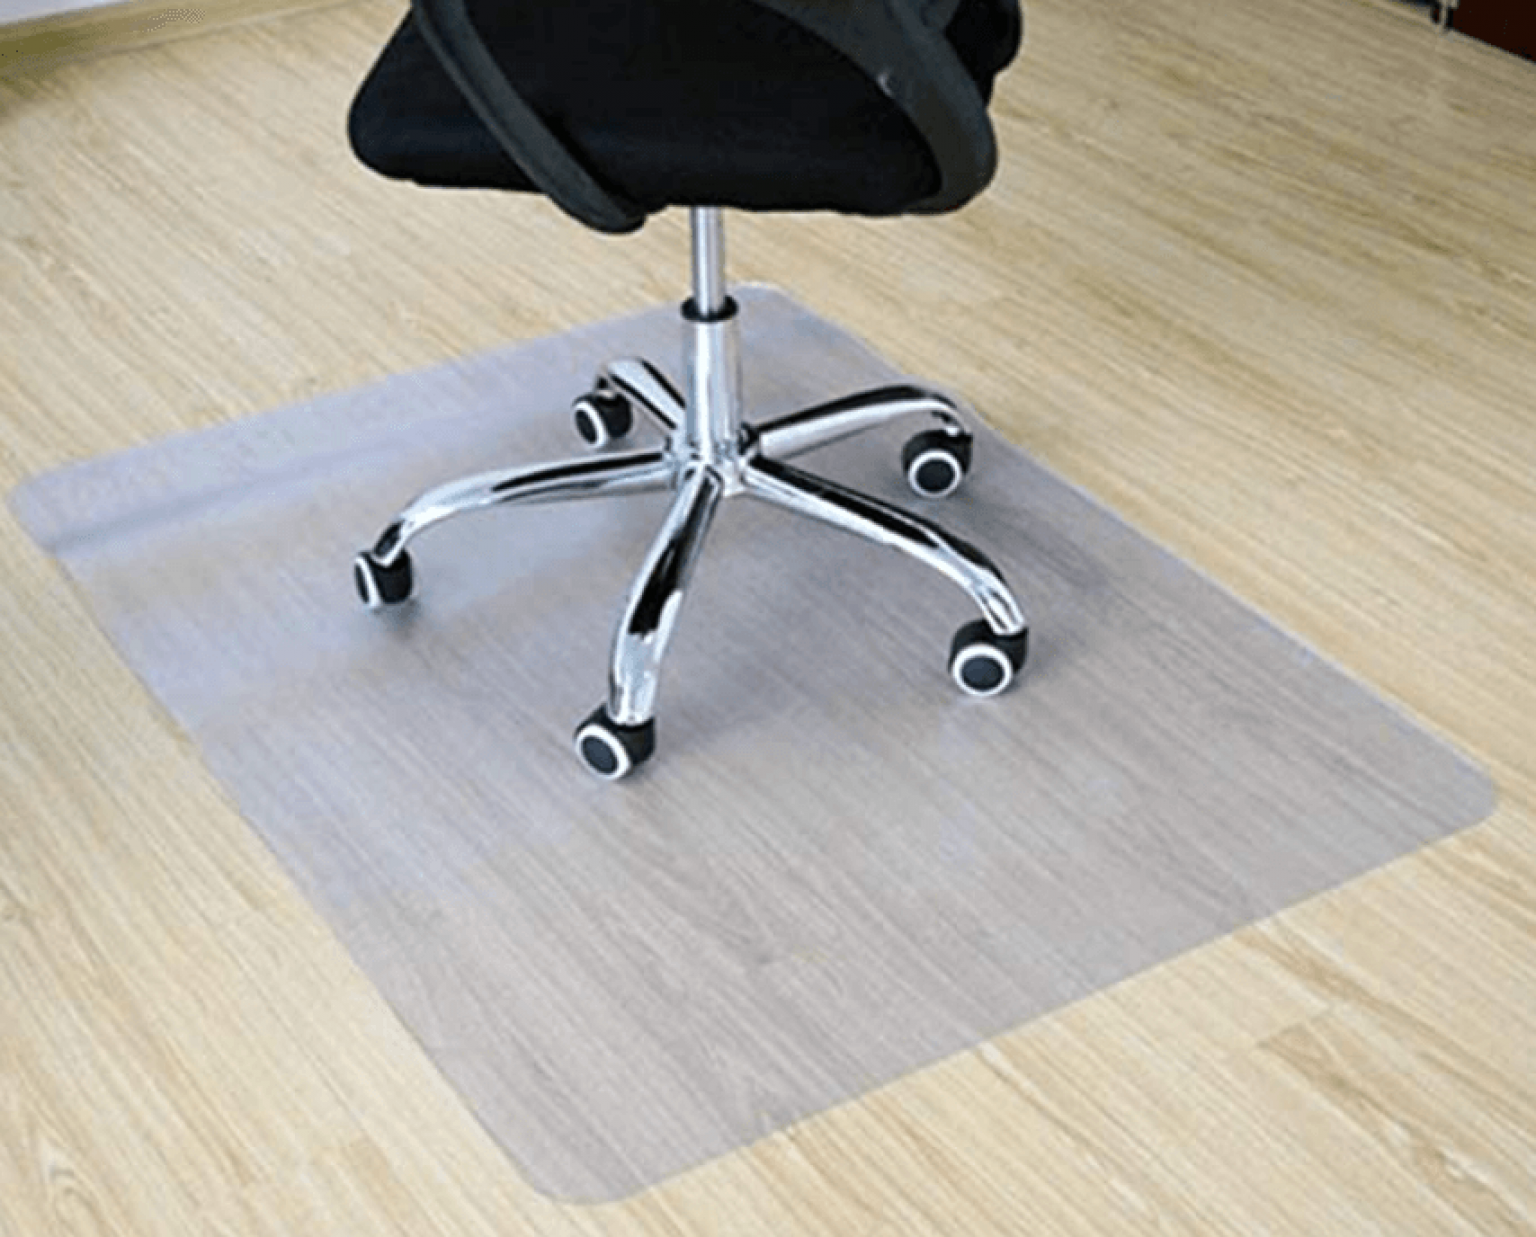 Best chair | desk mats | Best office chair mat for 2021 | CTC